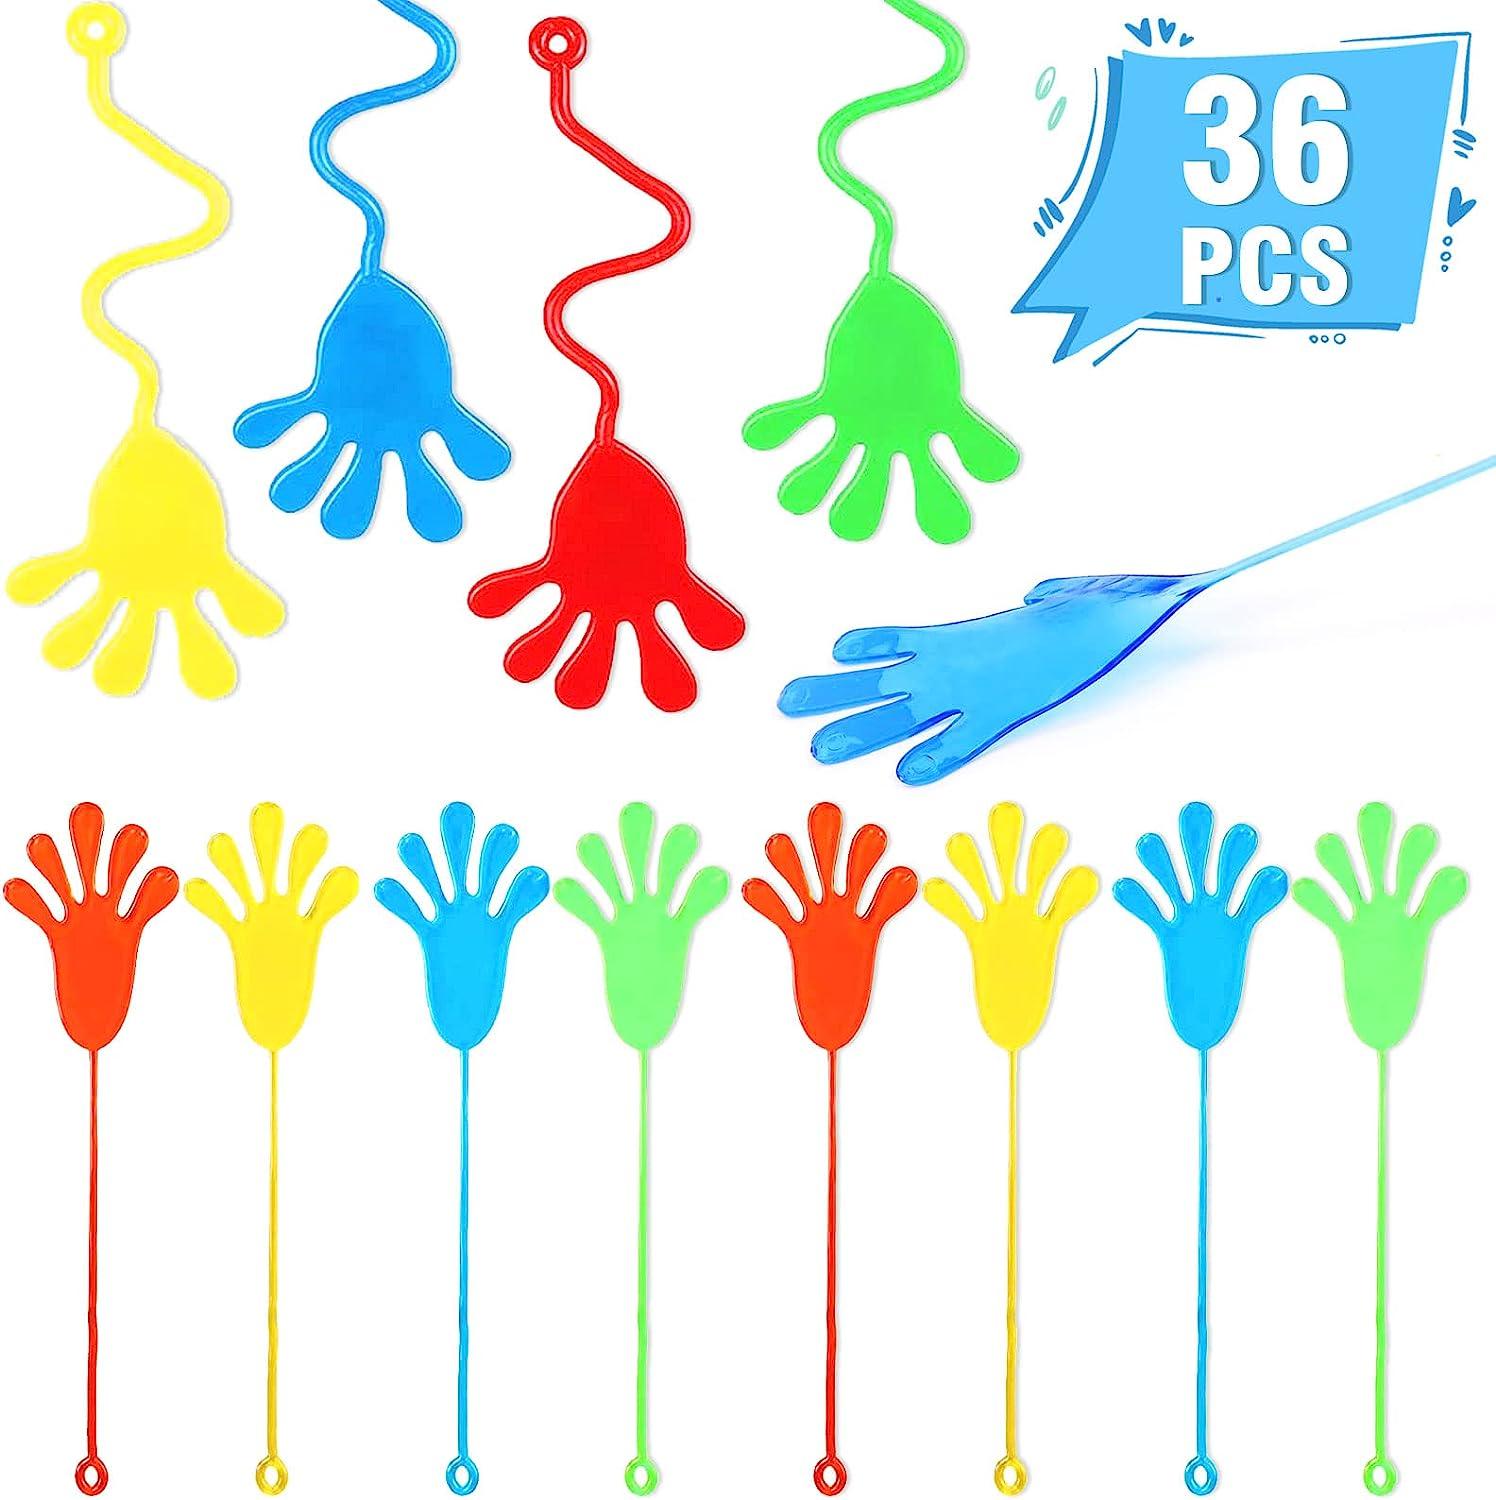 36 Pcs Sticky Hands Toys,Stretchy Slap Hands Sticky Sensory Toys for Birthday Party Favors